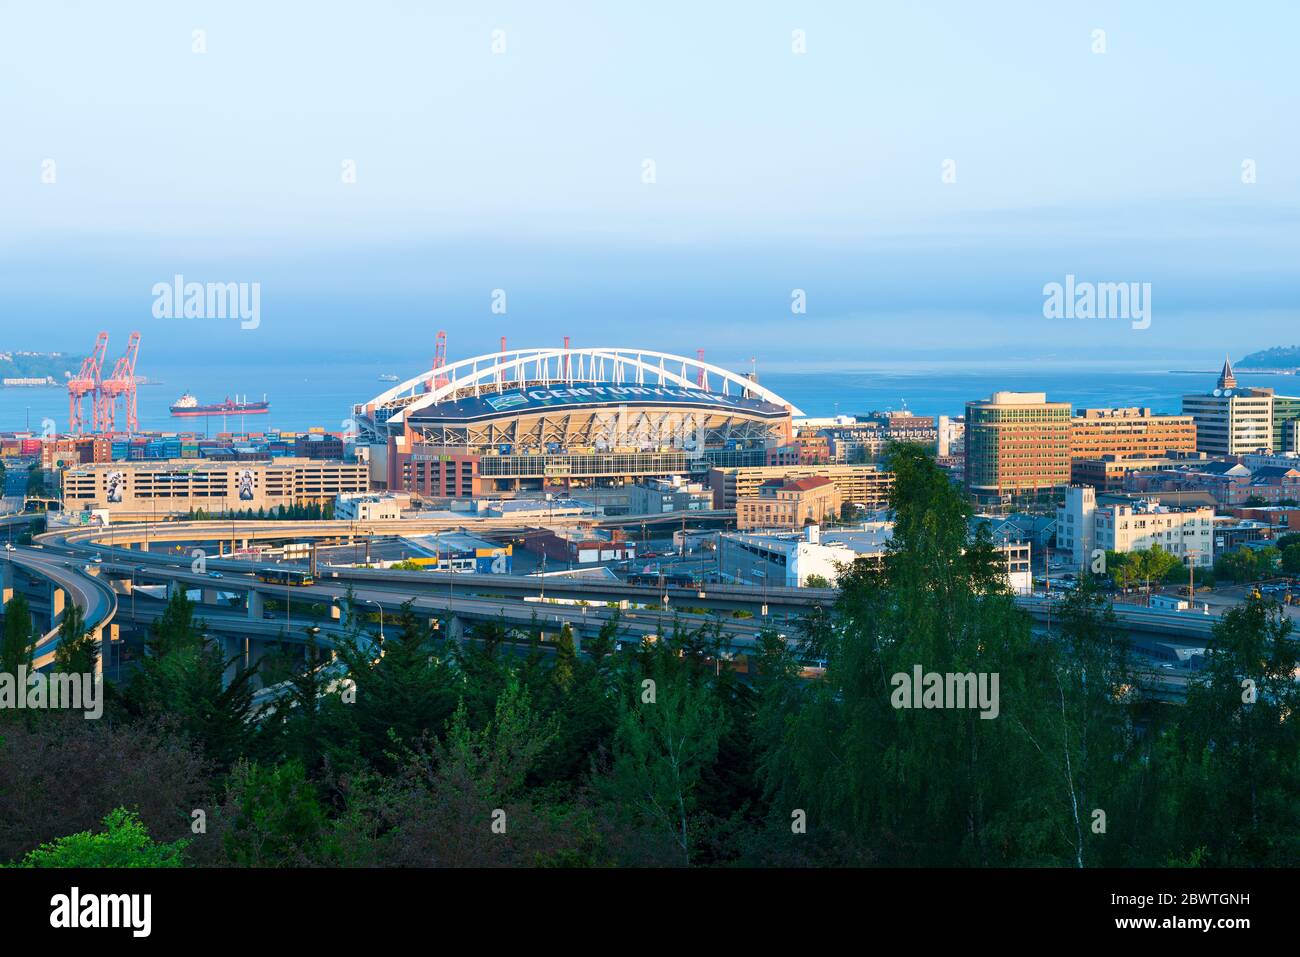 Distrito de Pioneer Square, Seattle, Washington State, Estados Unidos - Vista panorámica del distrito industrial con CenturyLink Field stadiu Foto de stock